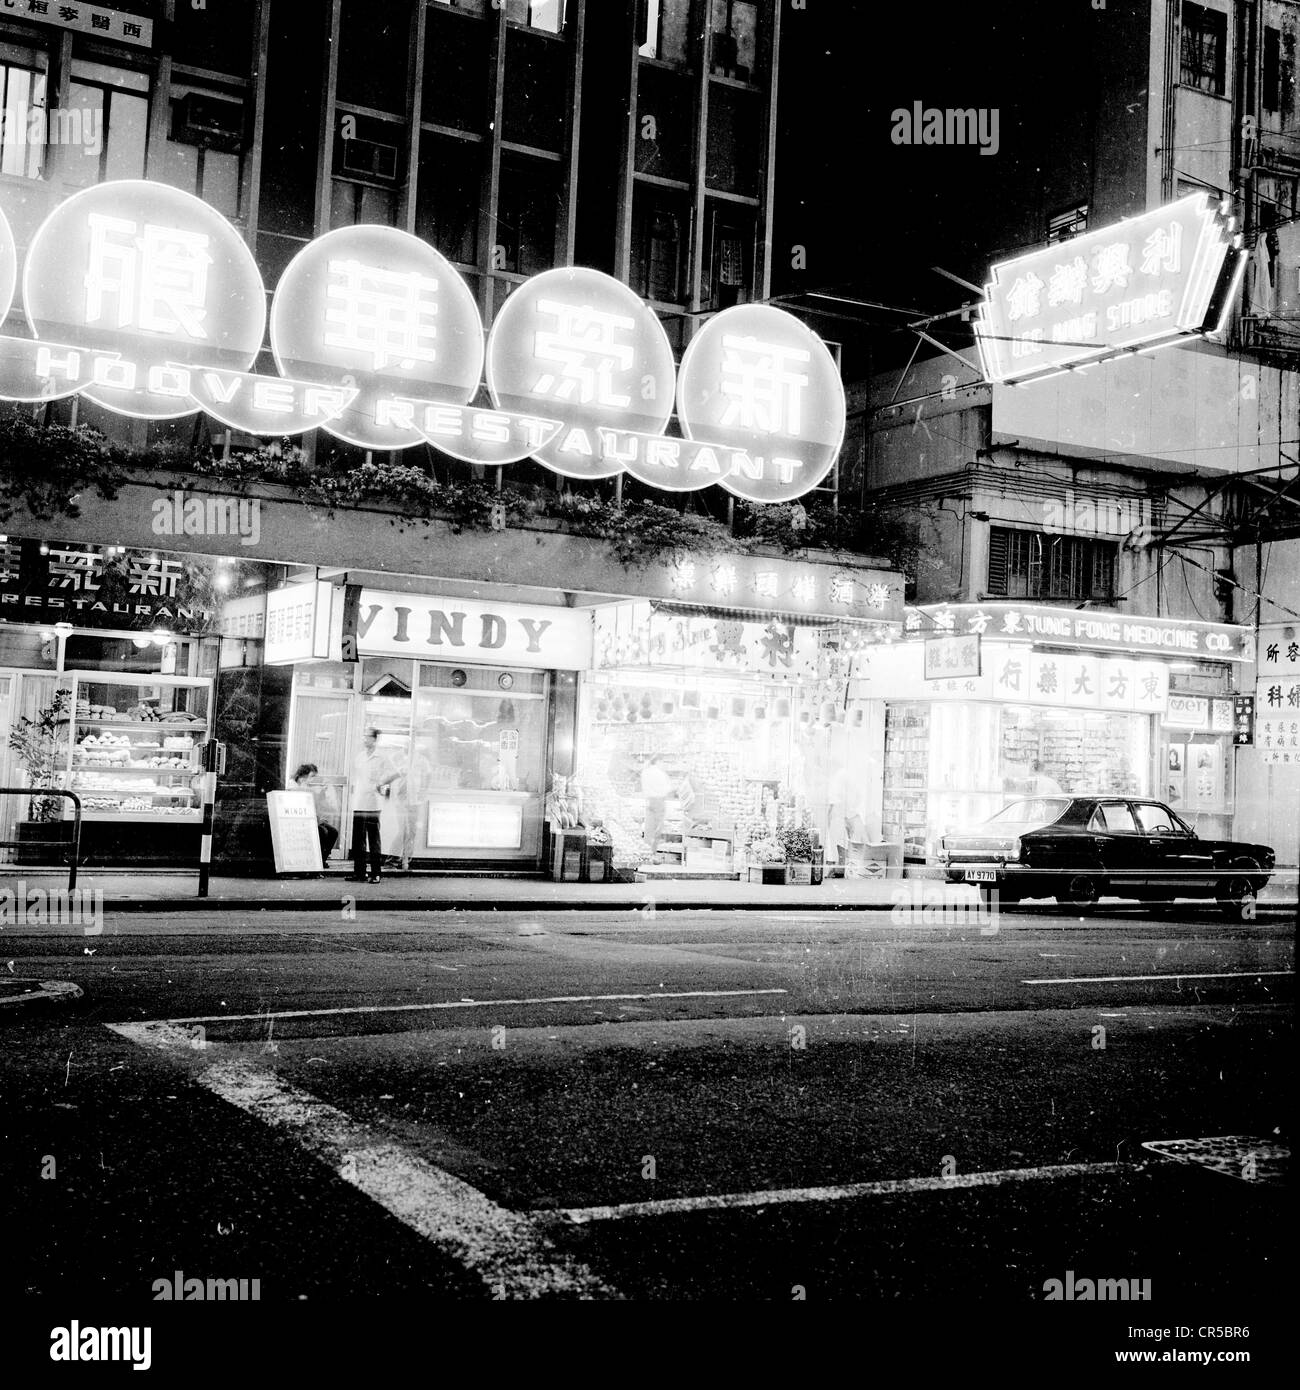 Hong Kong,1950s. Scena di strada, negozi e ristoranti. Attrazioni a neon di notte illuminato di una strada. Foto Stock